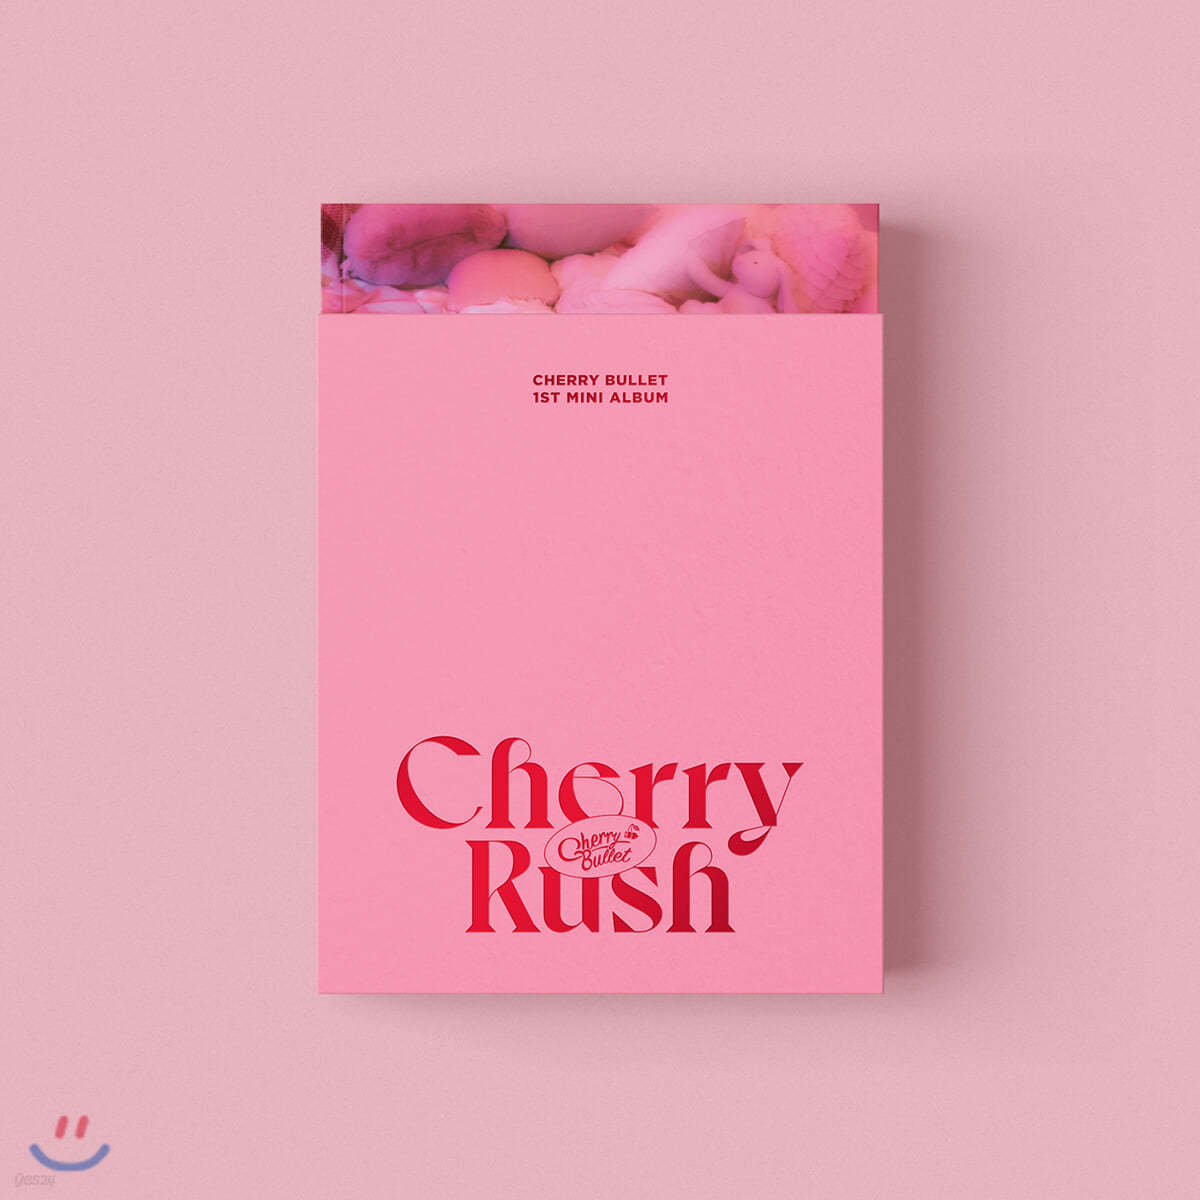 체리블렛 (Cherry Bullet) - 미니앨범 1집 : Cherry Rush